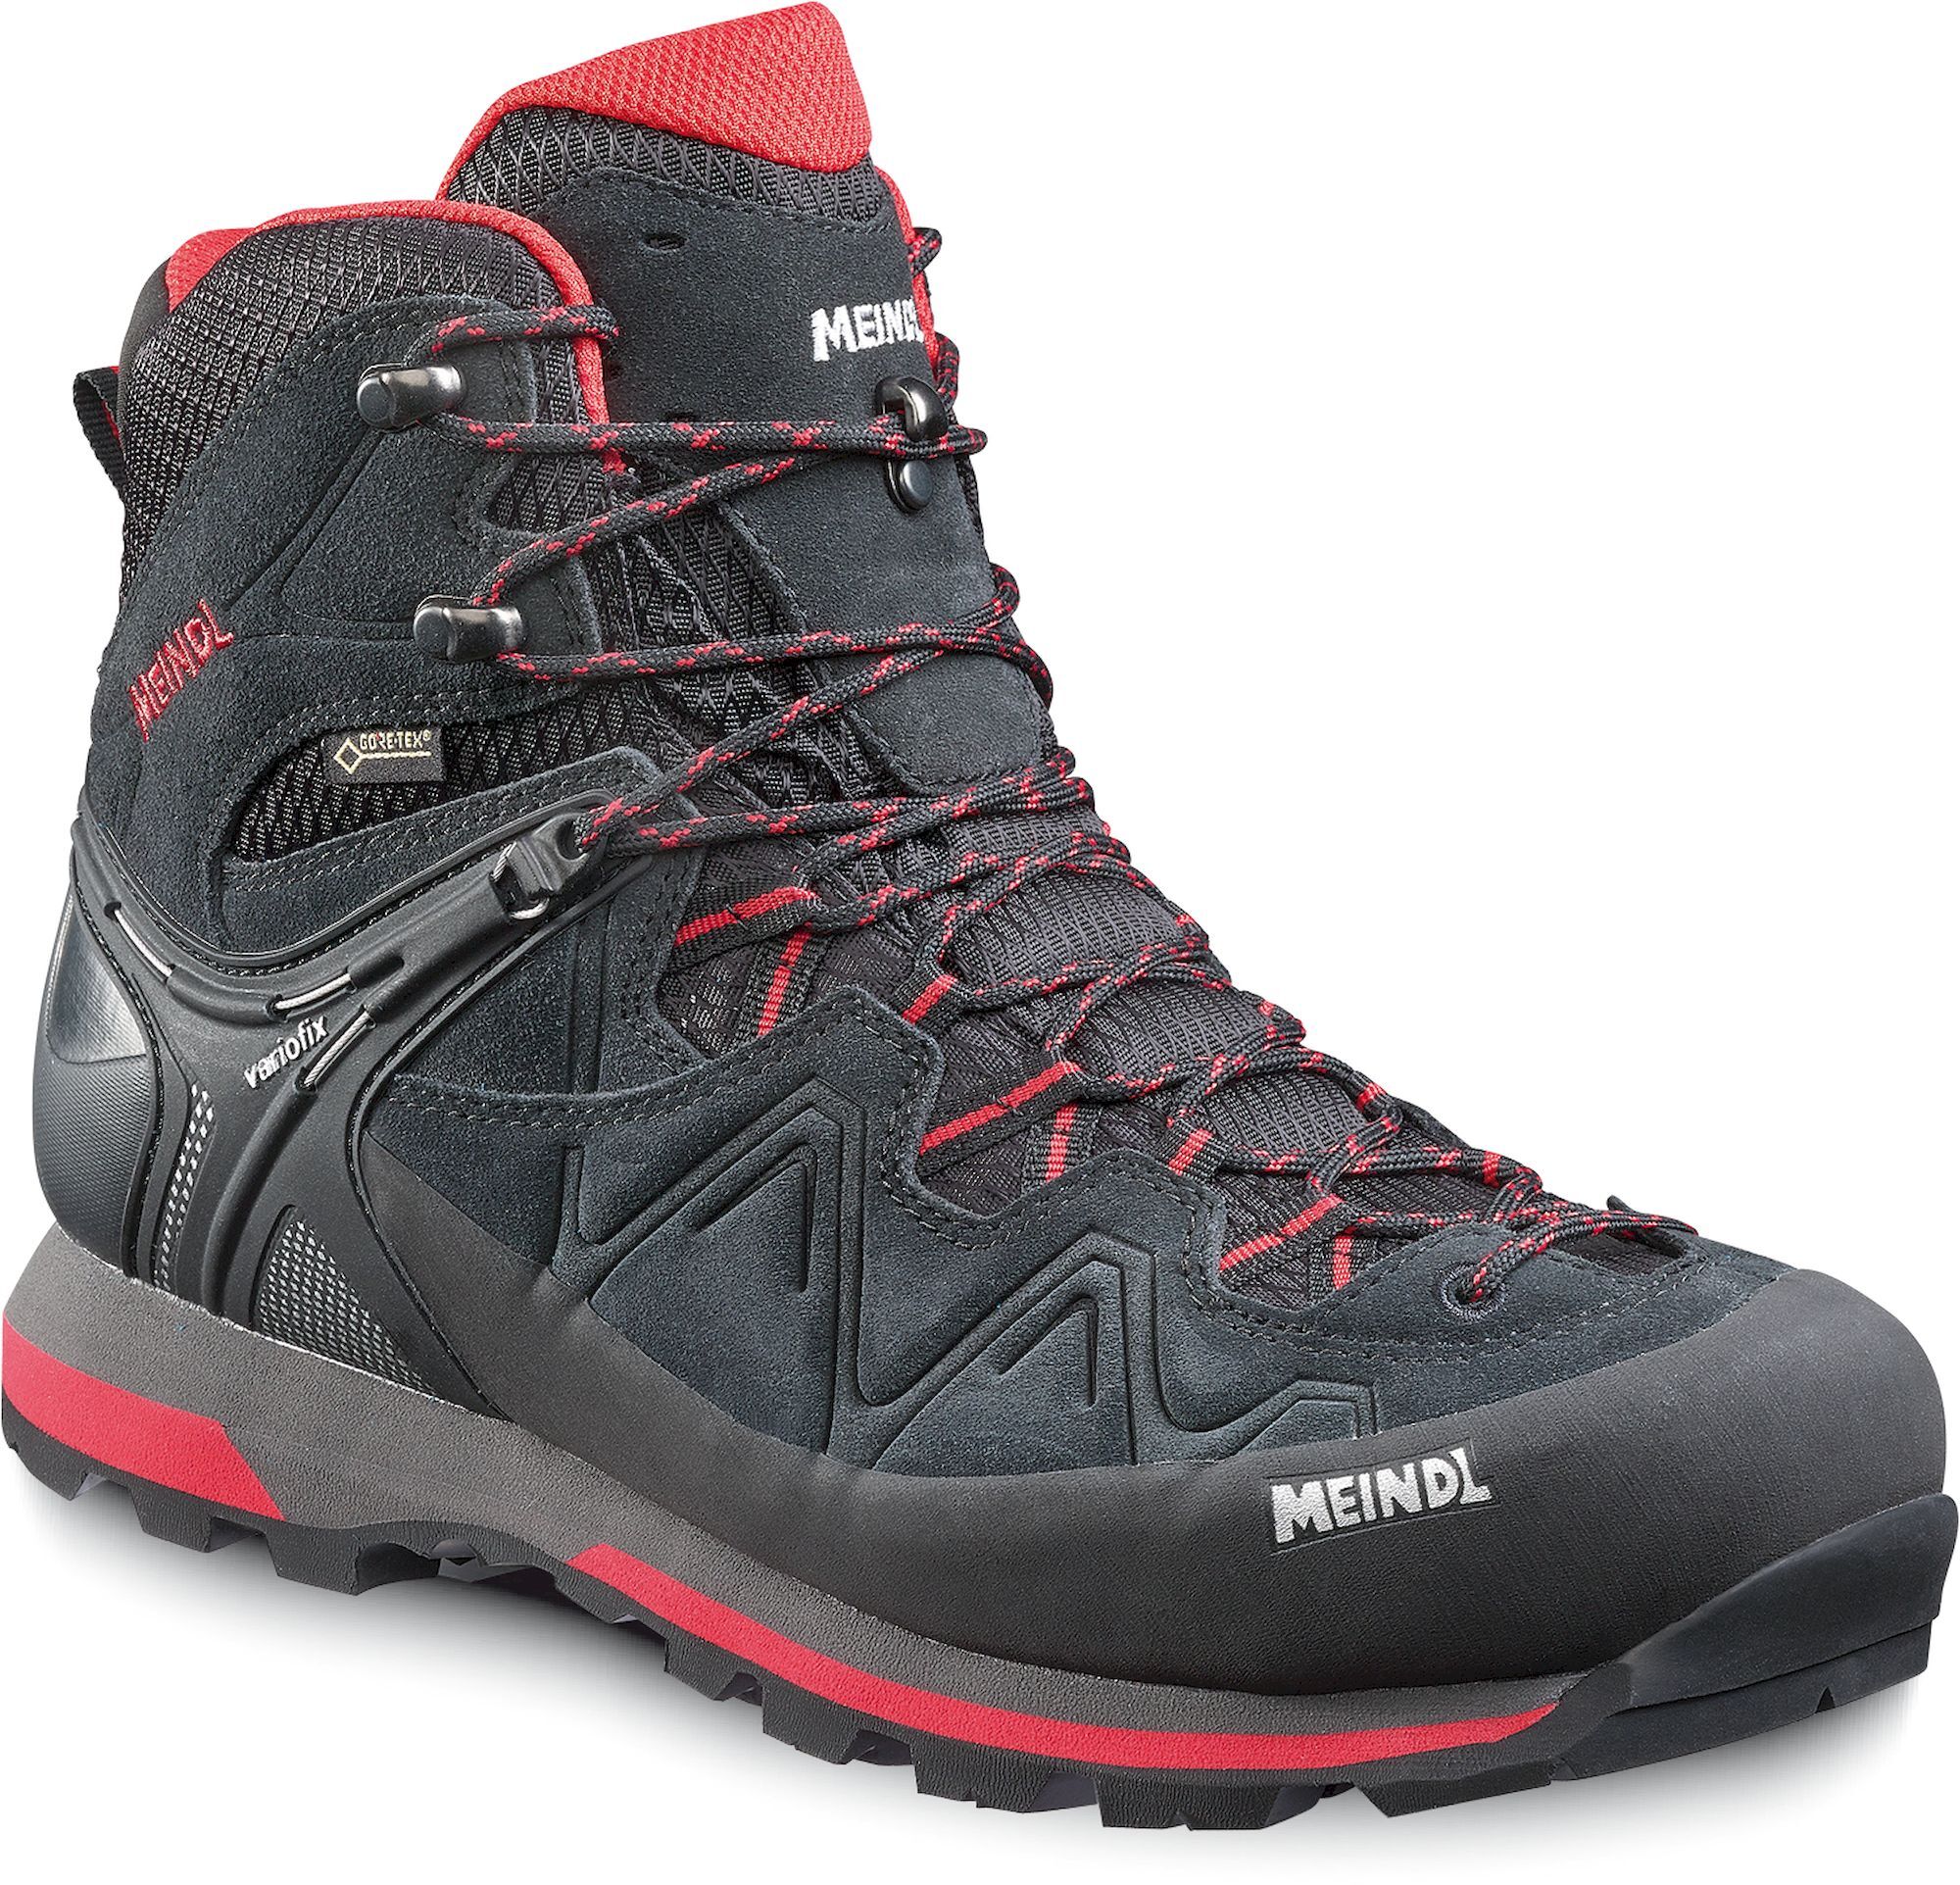 Meindl Tonale GTX - Hiking shoes - Men's